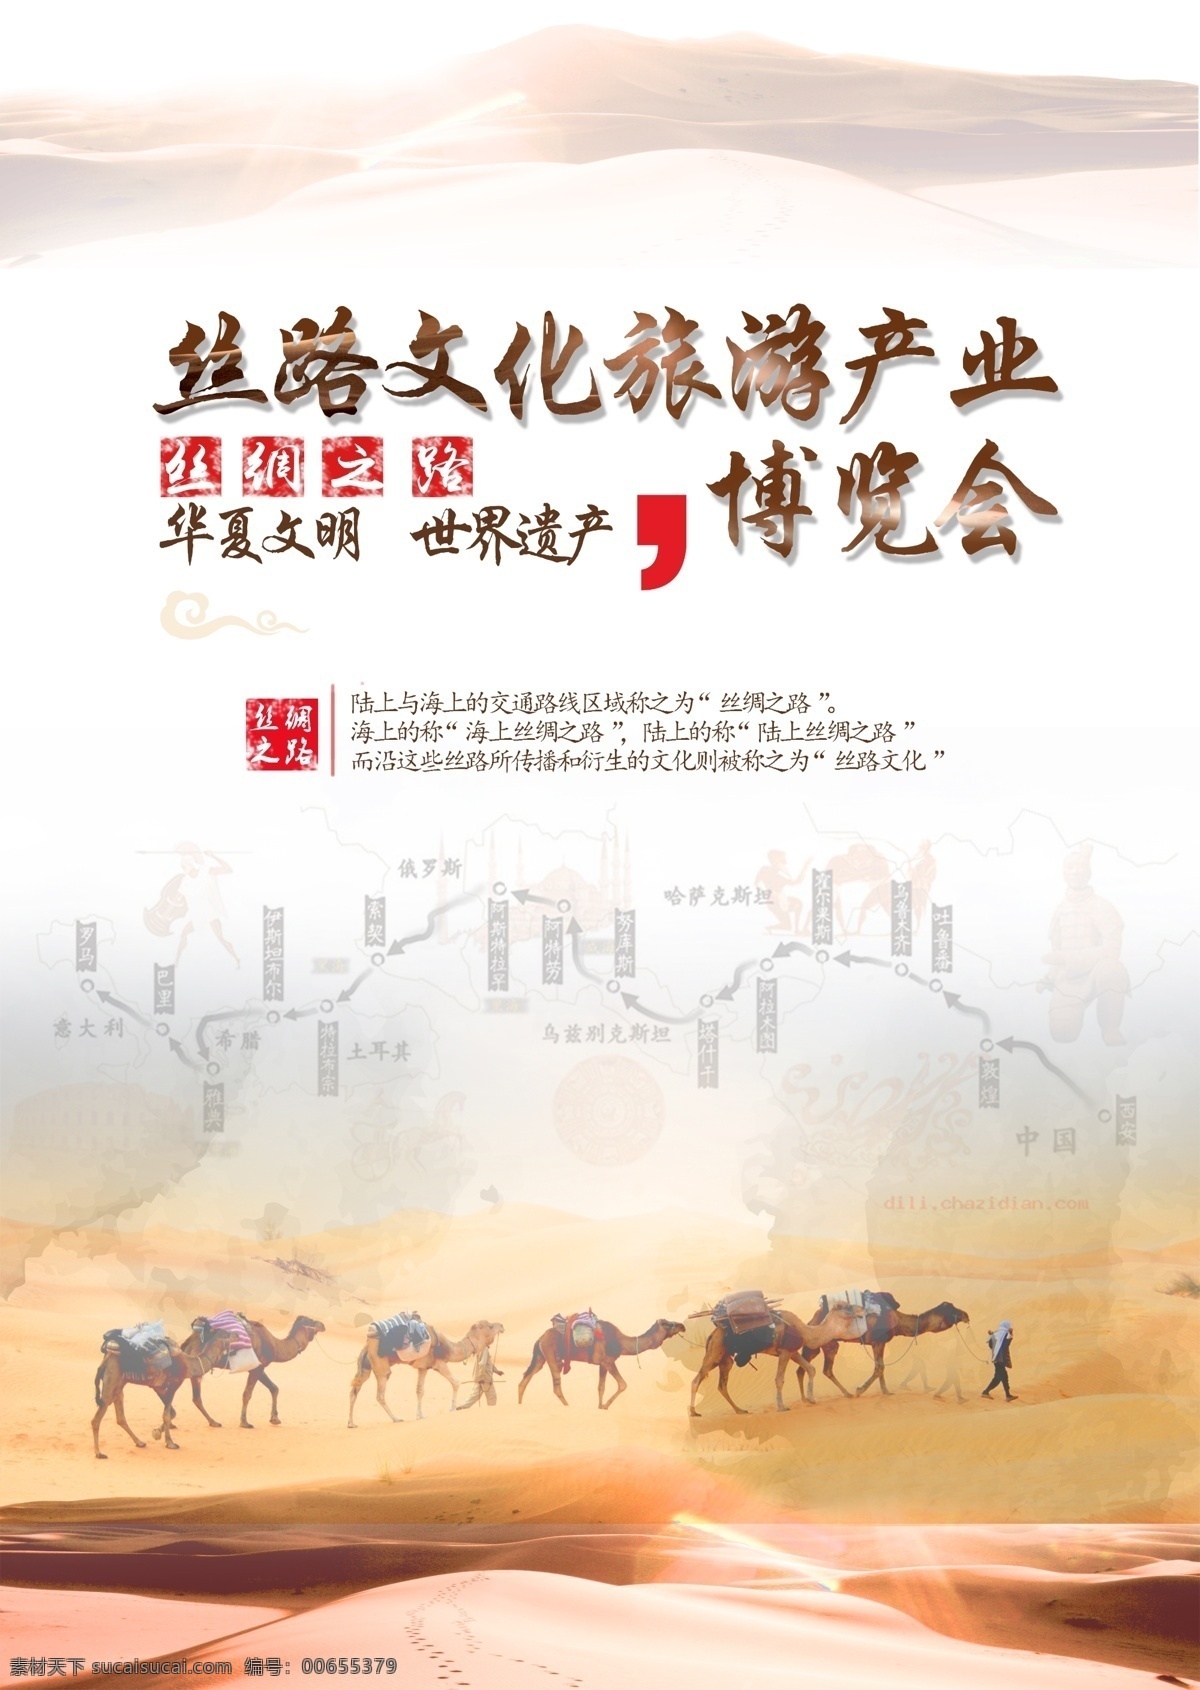 丝路 文化 文化旅游 产业 博览会 丝路文化 丝绸之路 政治